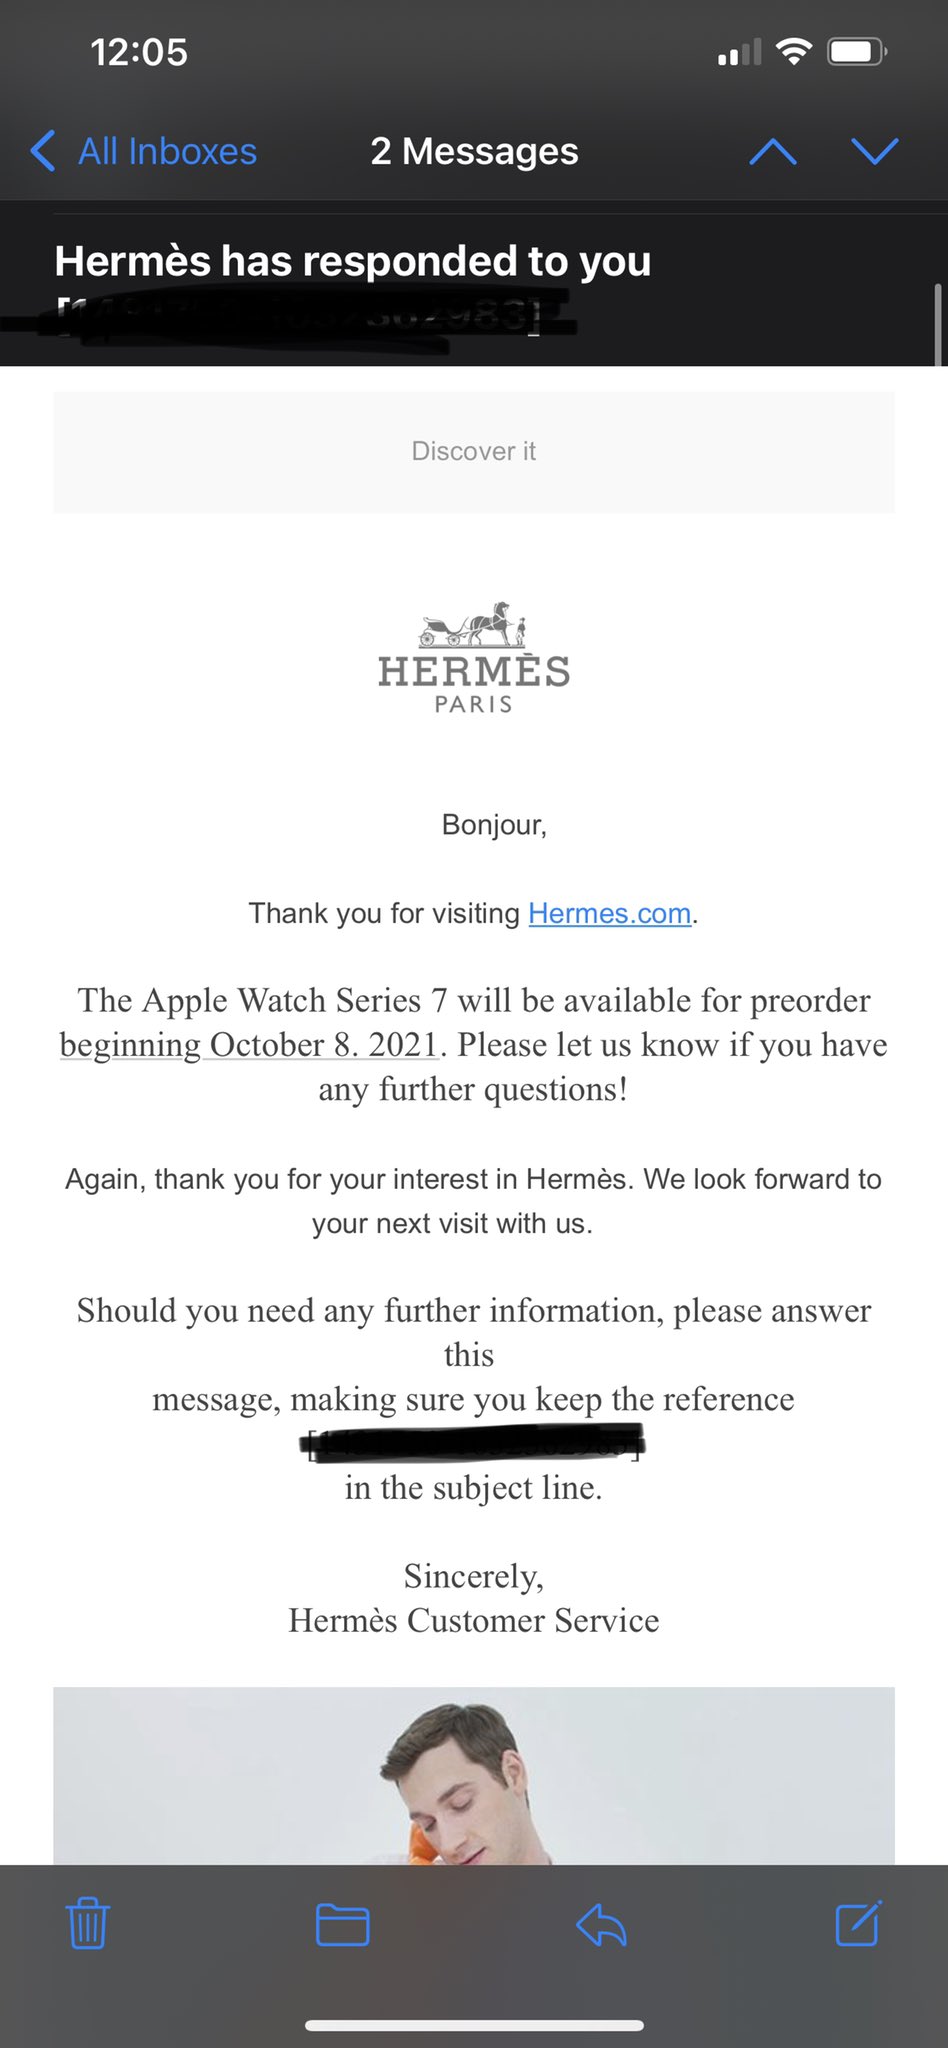 Apple Watch Series 7 Pre-orders Rumored to Begin October 8